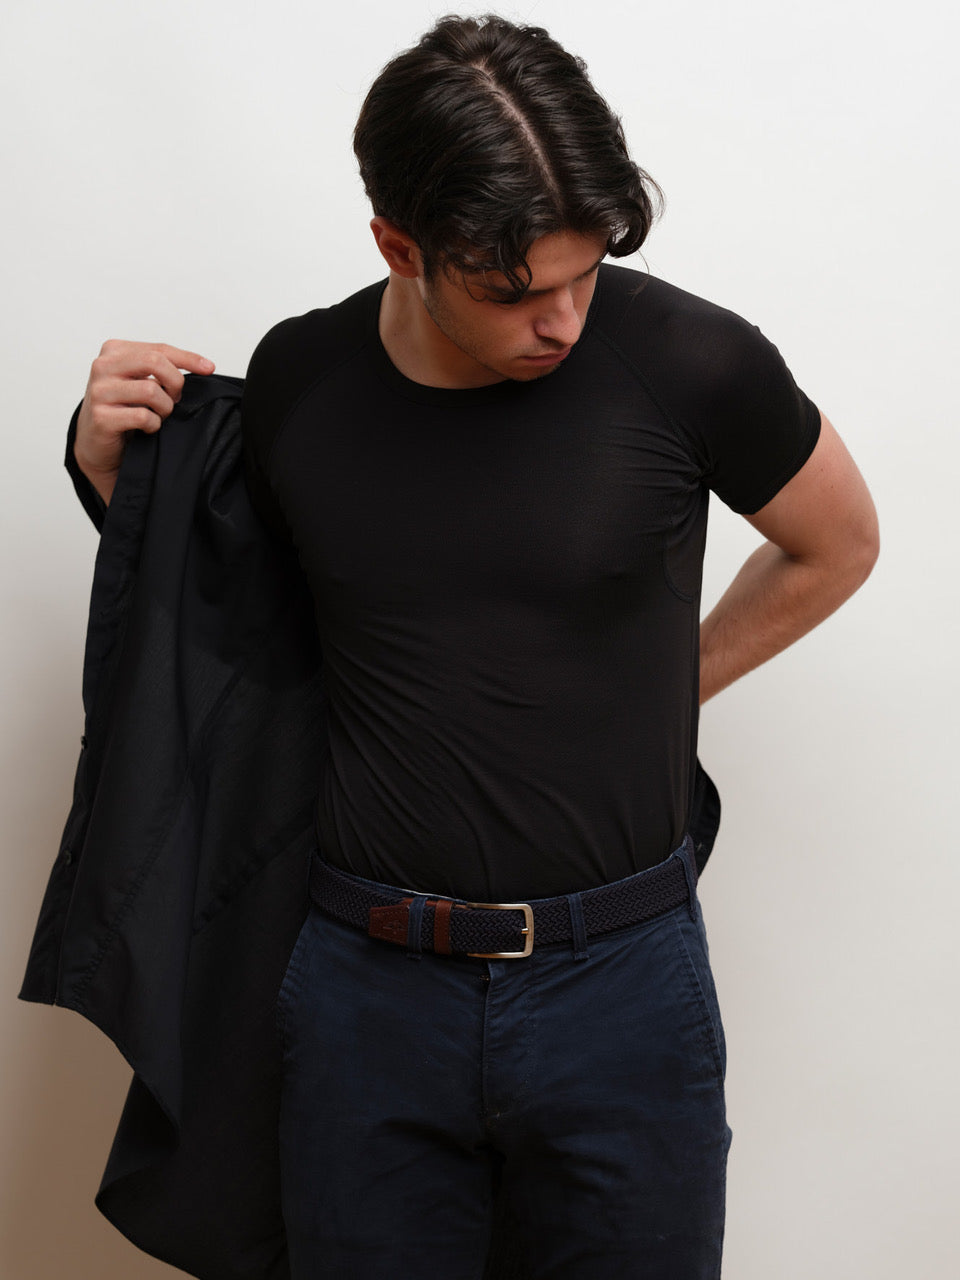 Homme portant un maillot de corps noir à col rond